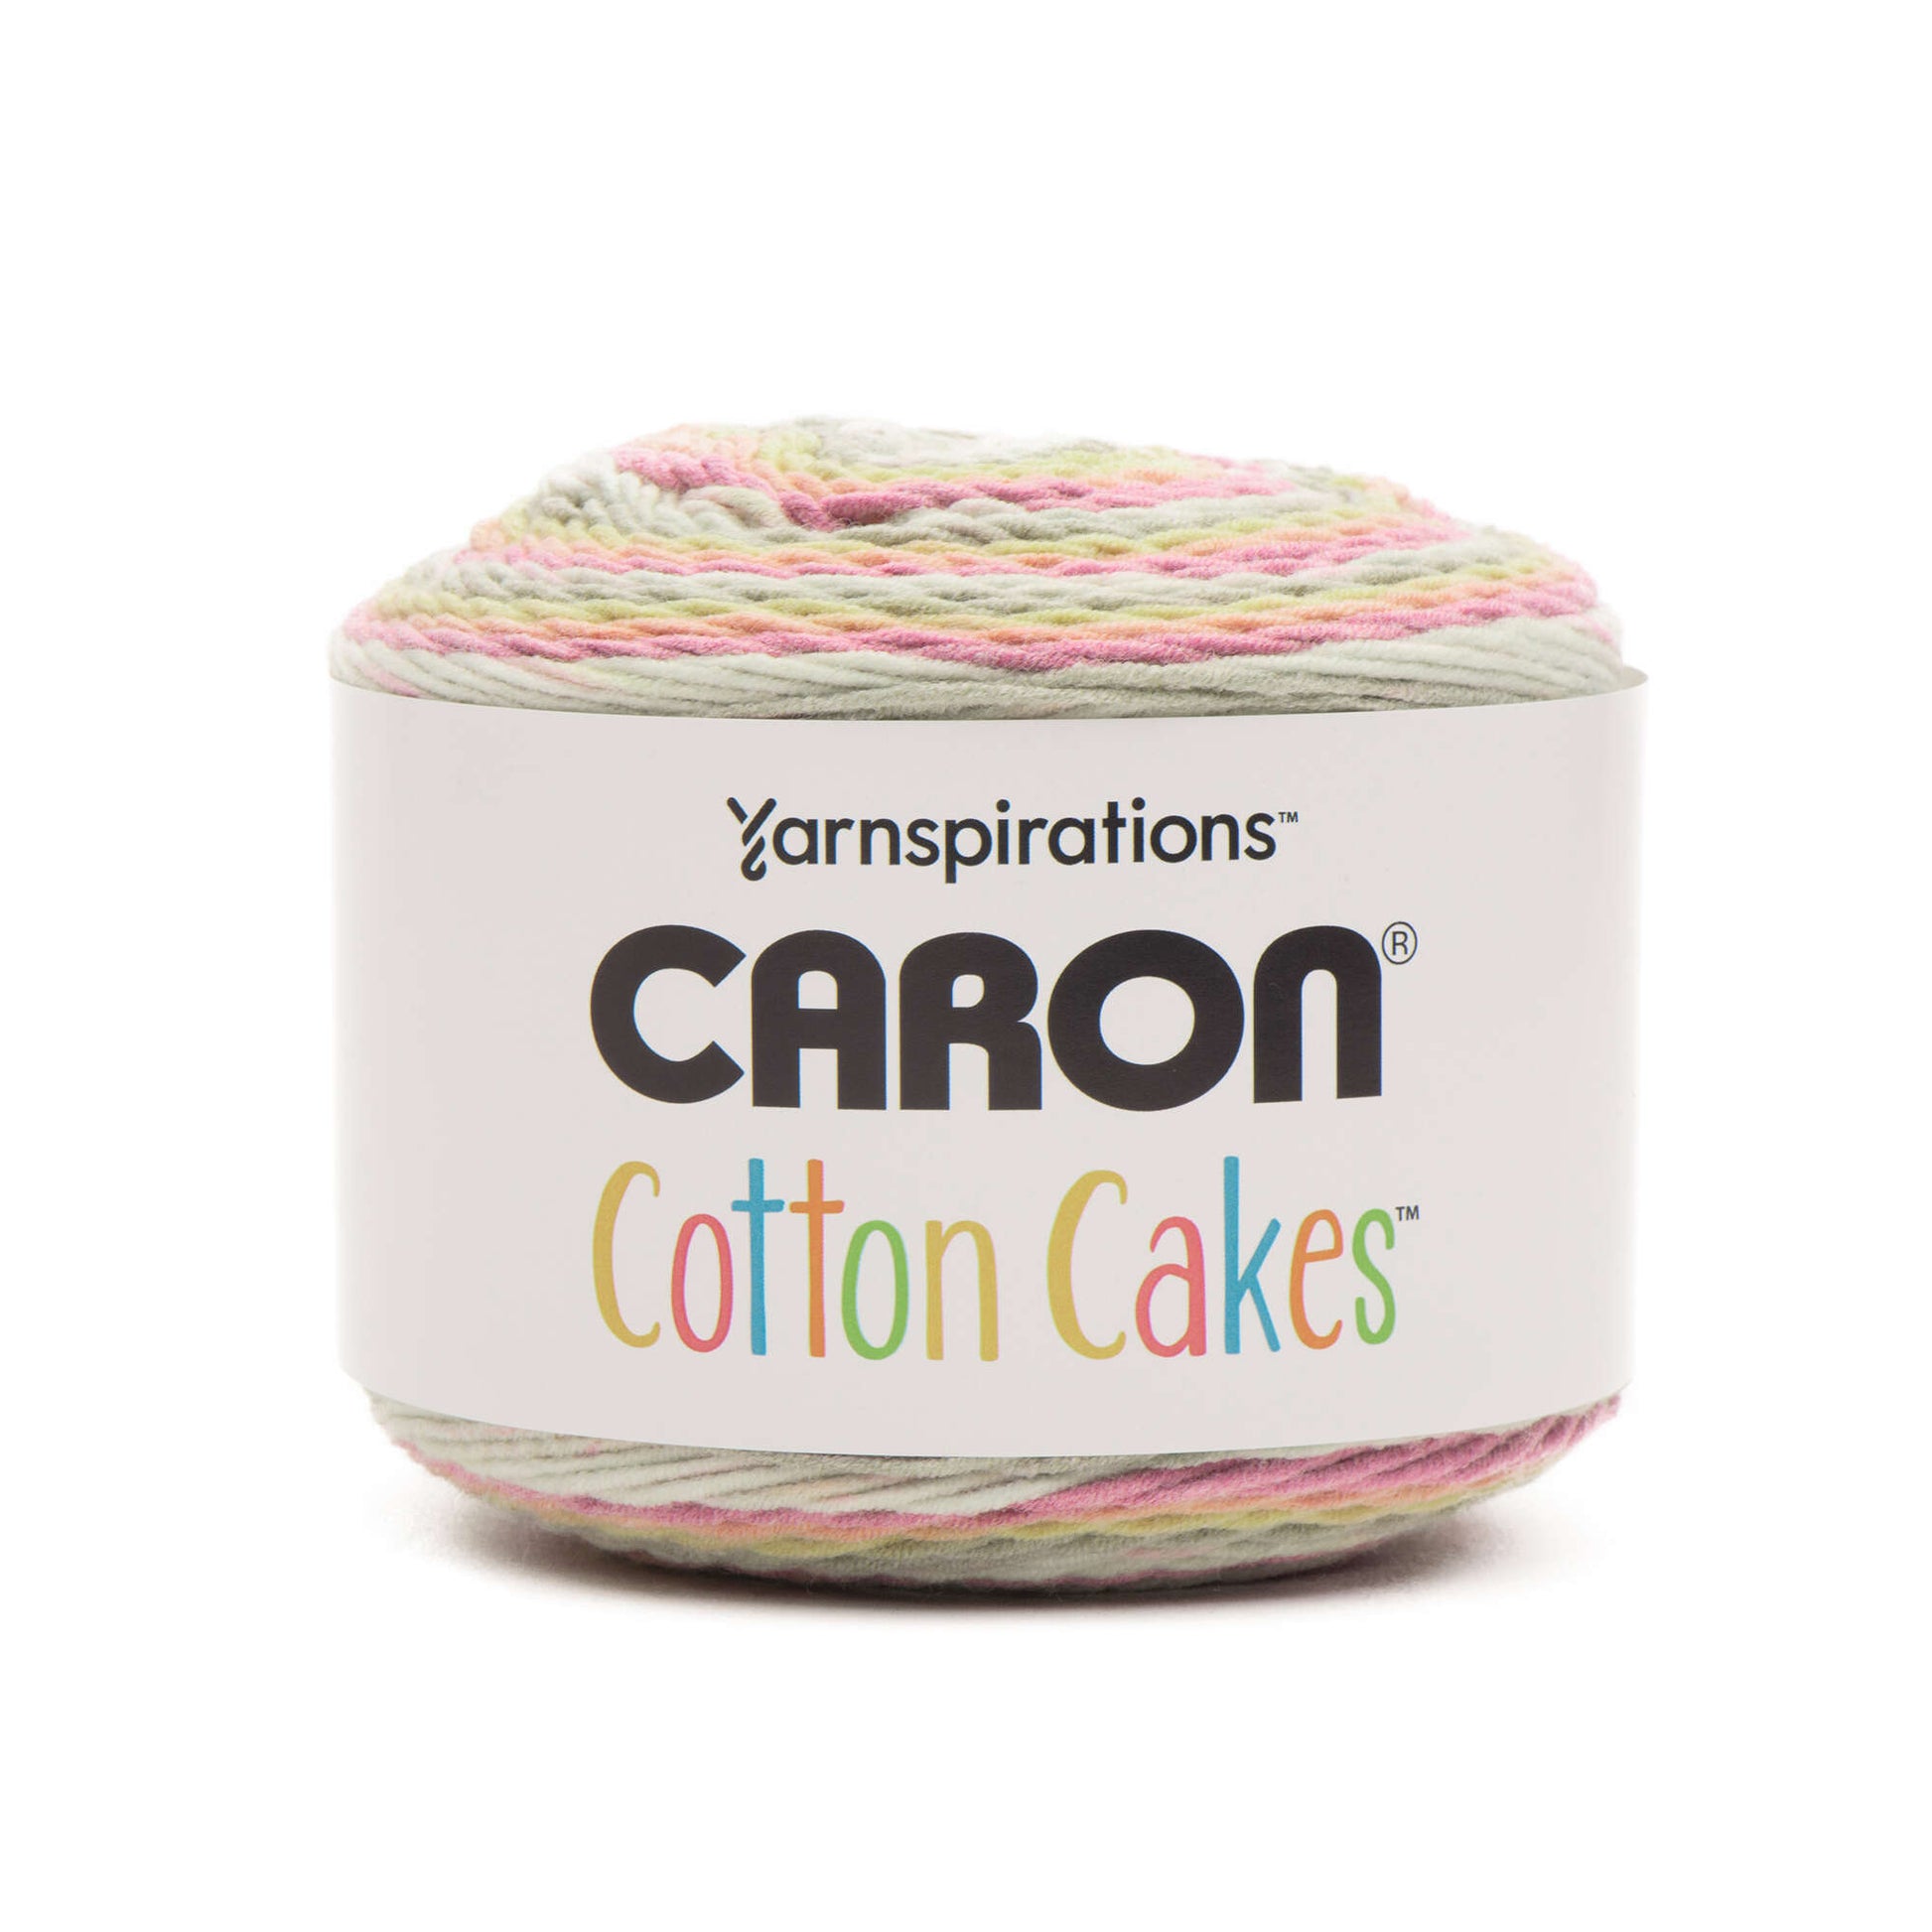 Caron Cotton 8.8oz Cakes Yarn